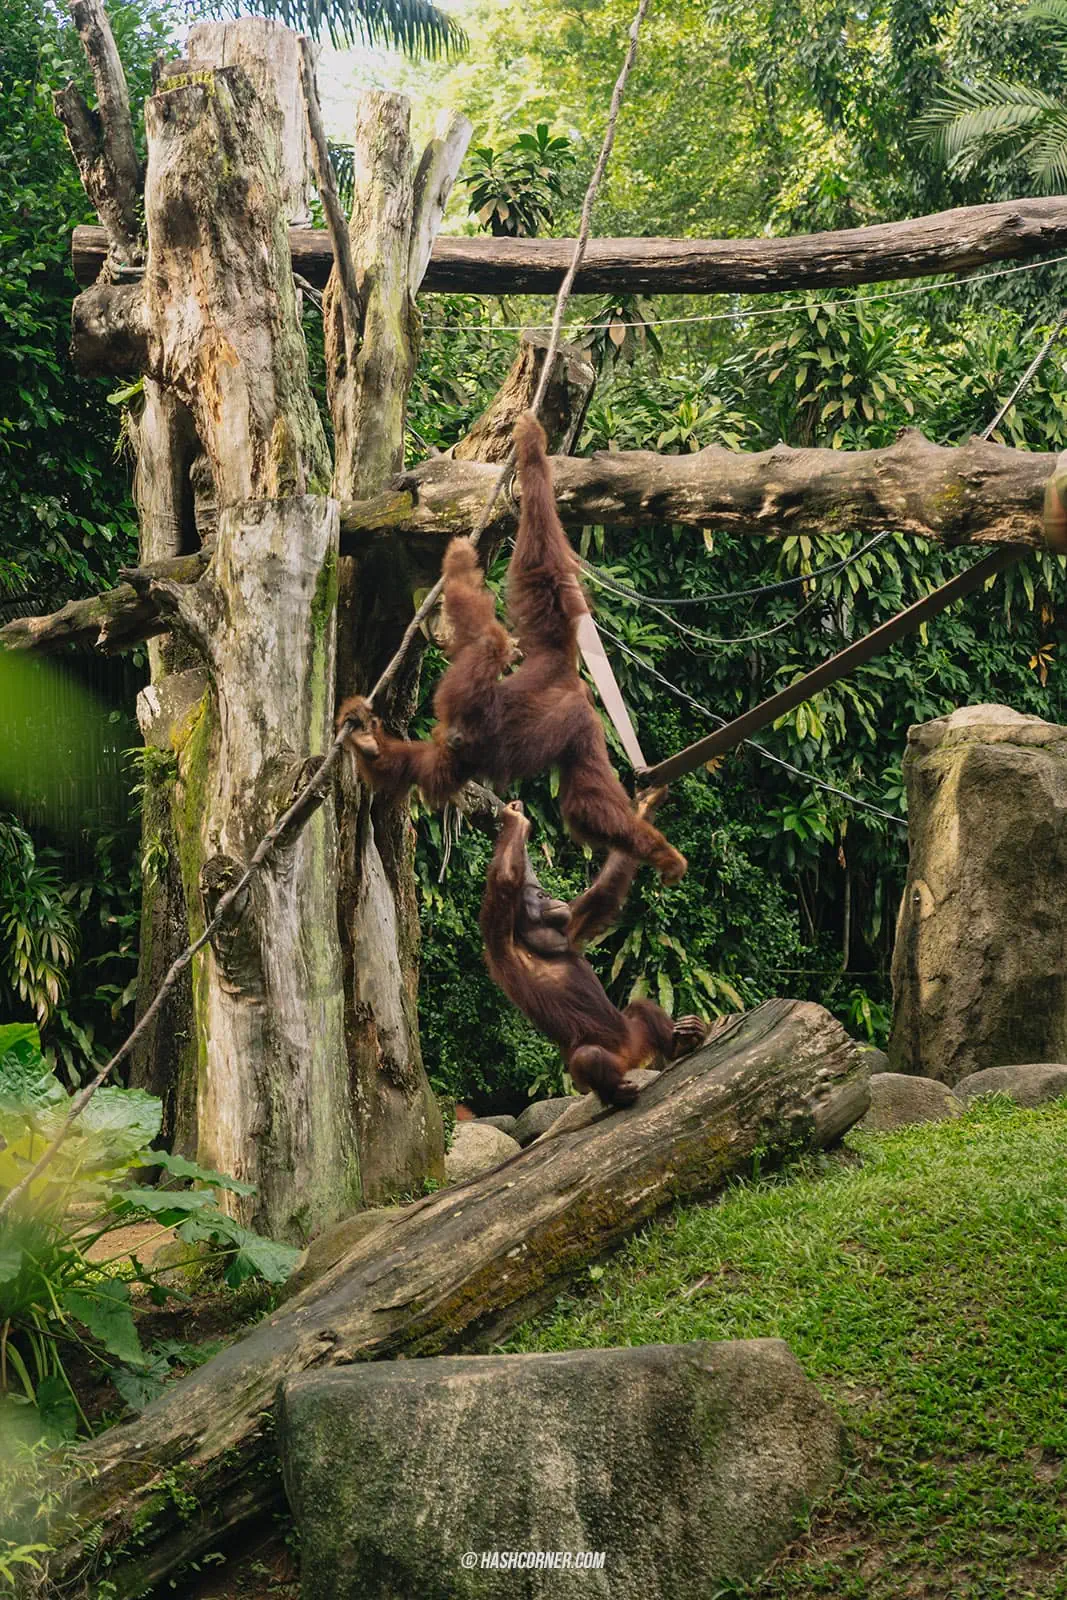 รีวิว Singapore Zoo x สิงคโปร์ เที่ยวส่องสวนสัตว์สิงคโปร์